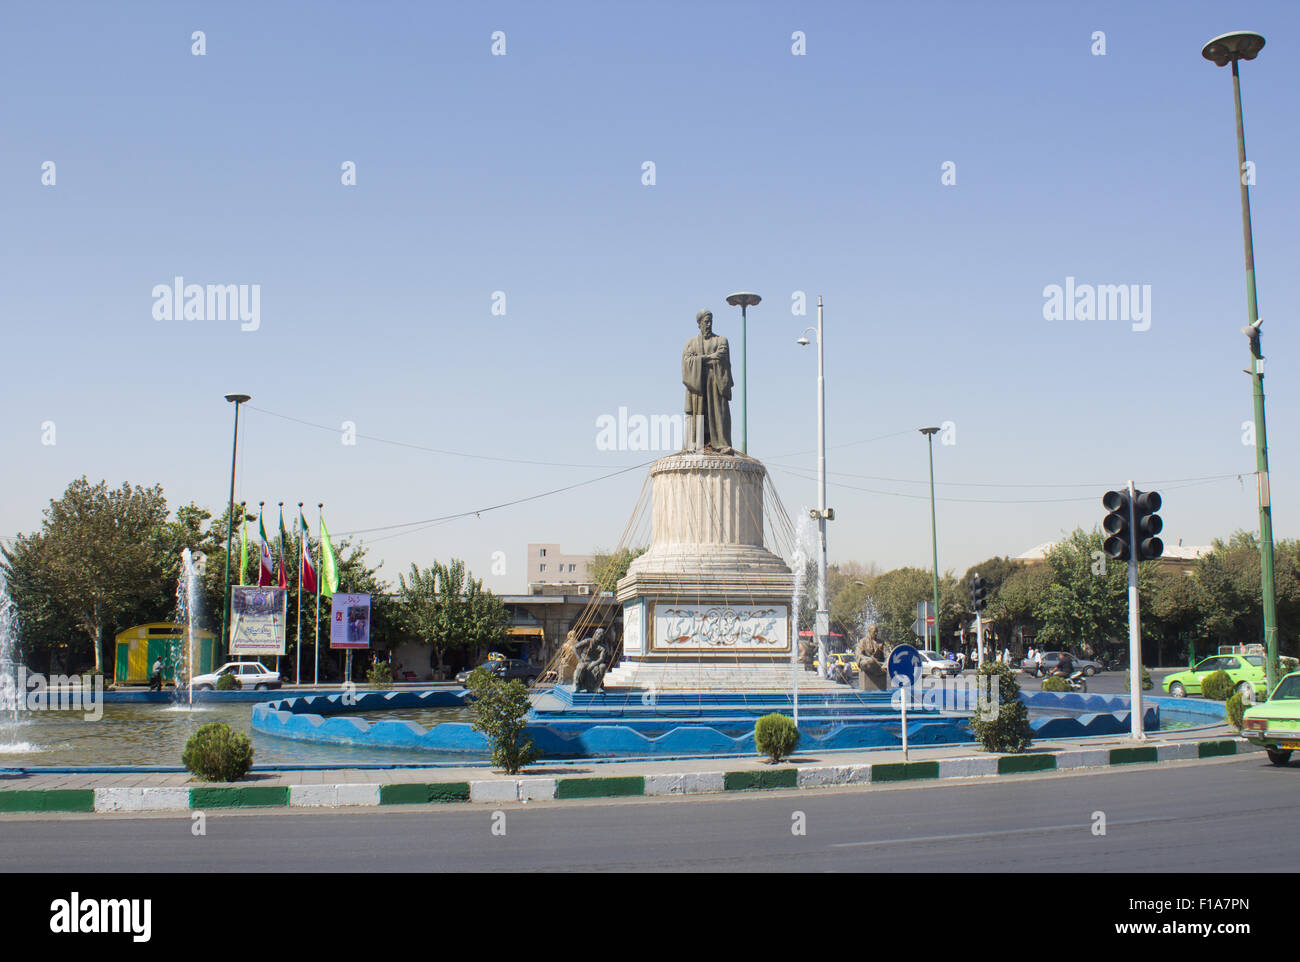 Statue of Abu Bakr al-Razi Stock Photo